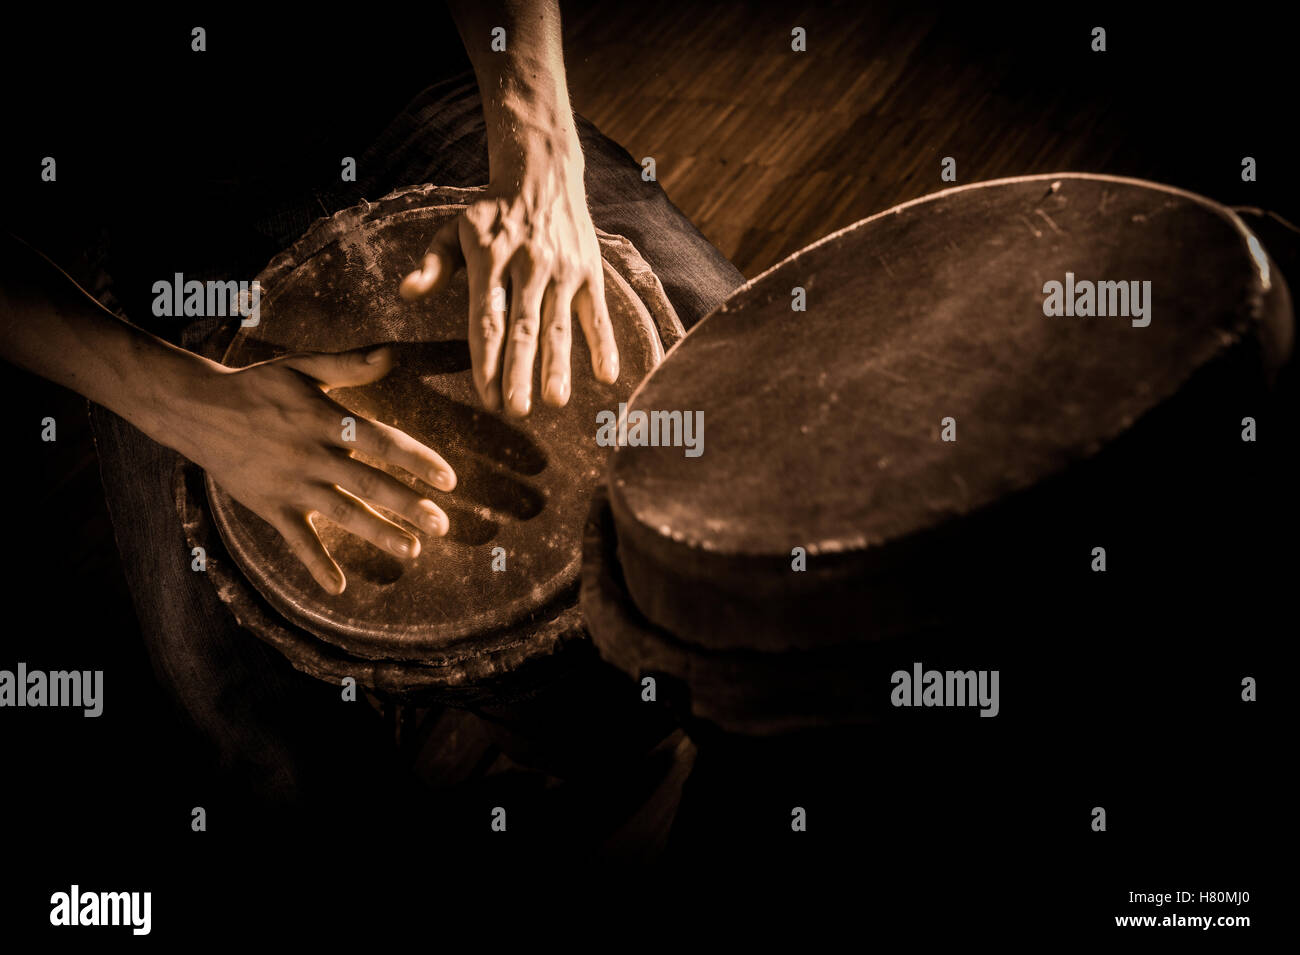 Les mains des gens à jouer de la musique à djembe drums, France Photo Stock  - Alamy